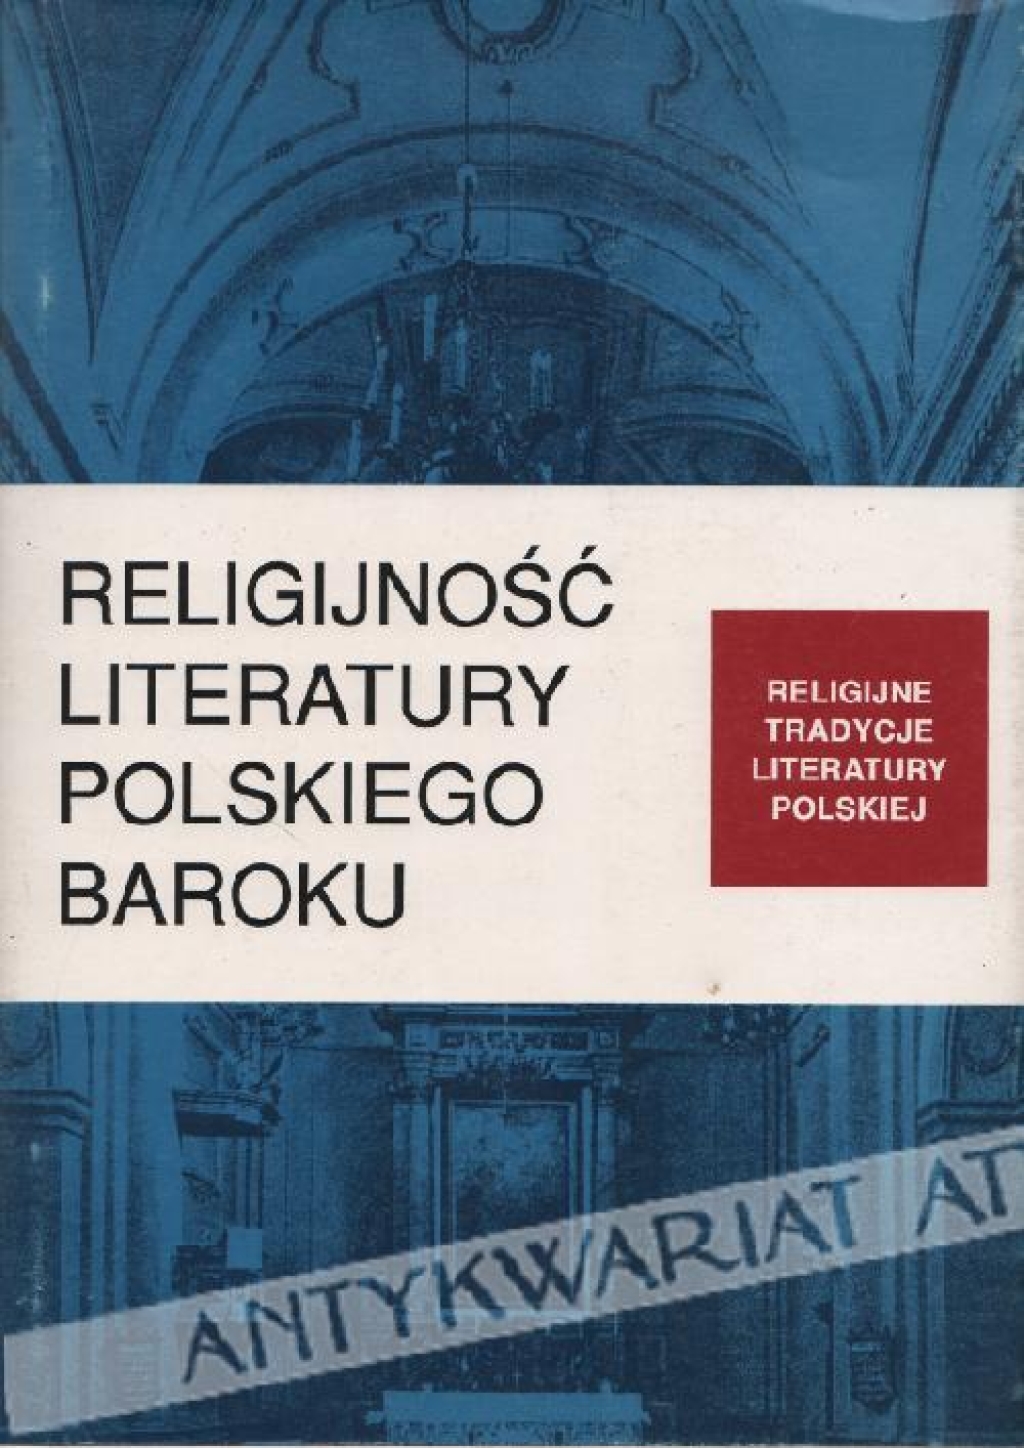 Religijność literatury polskiego baroku [zbiór tekstów]